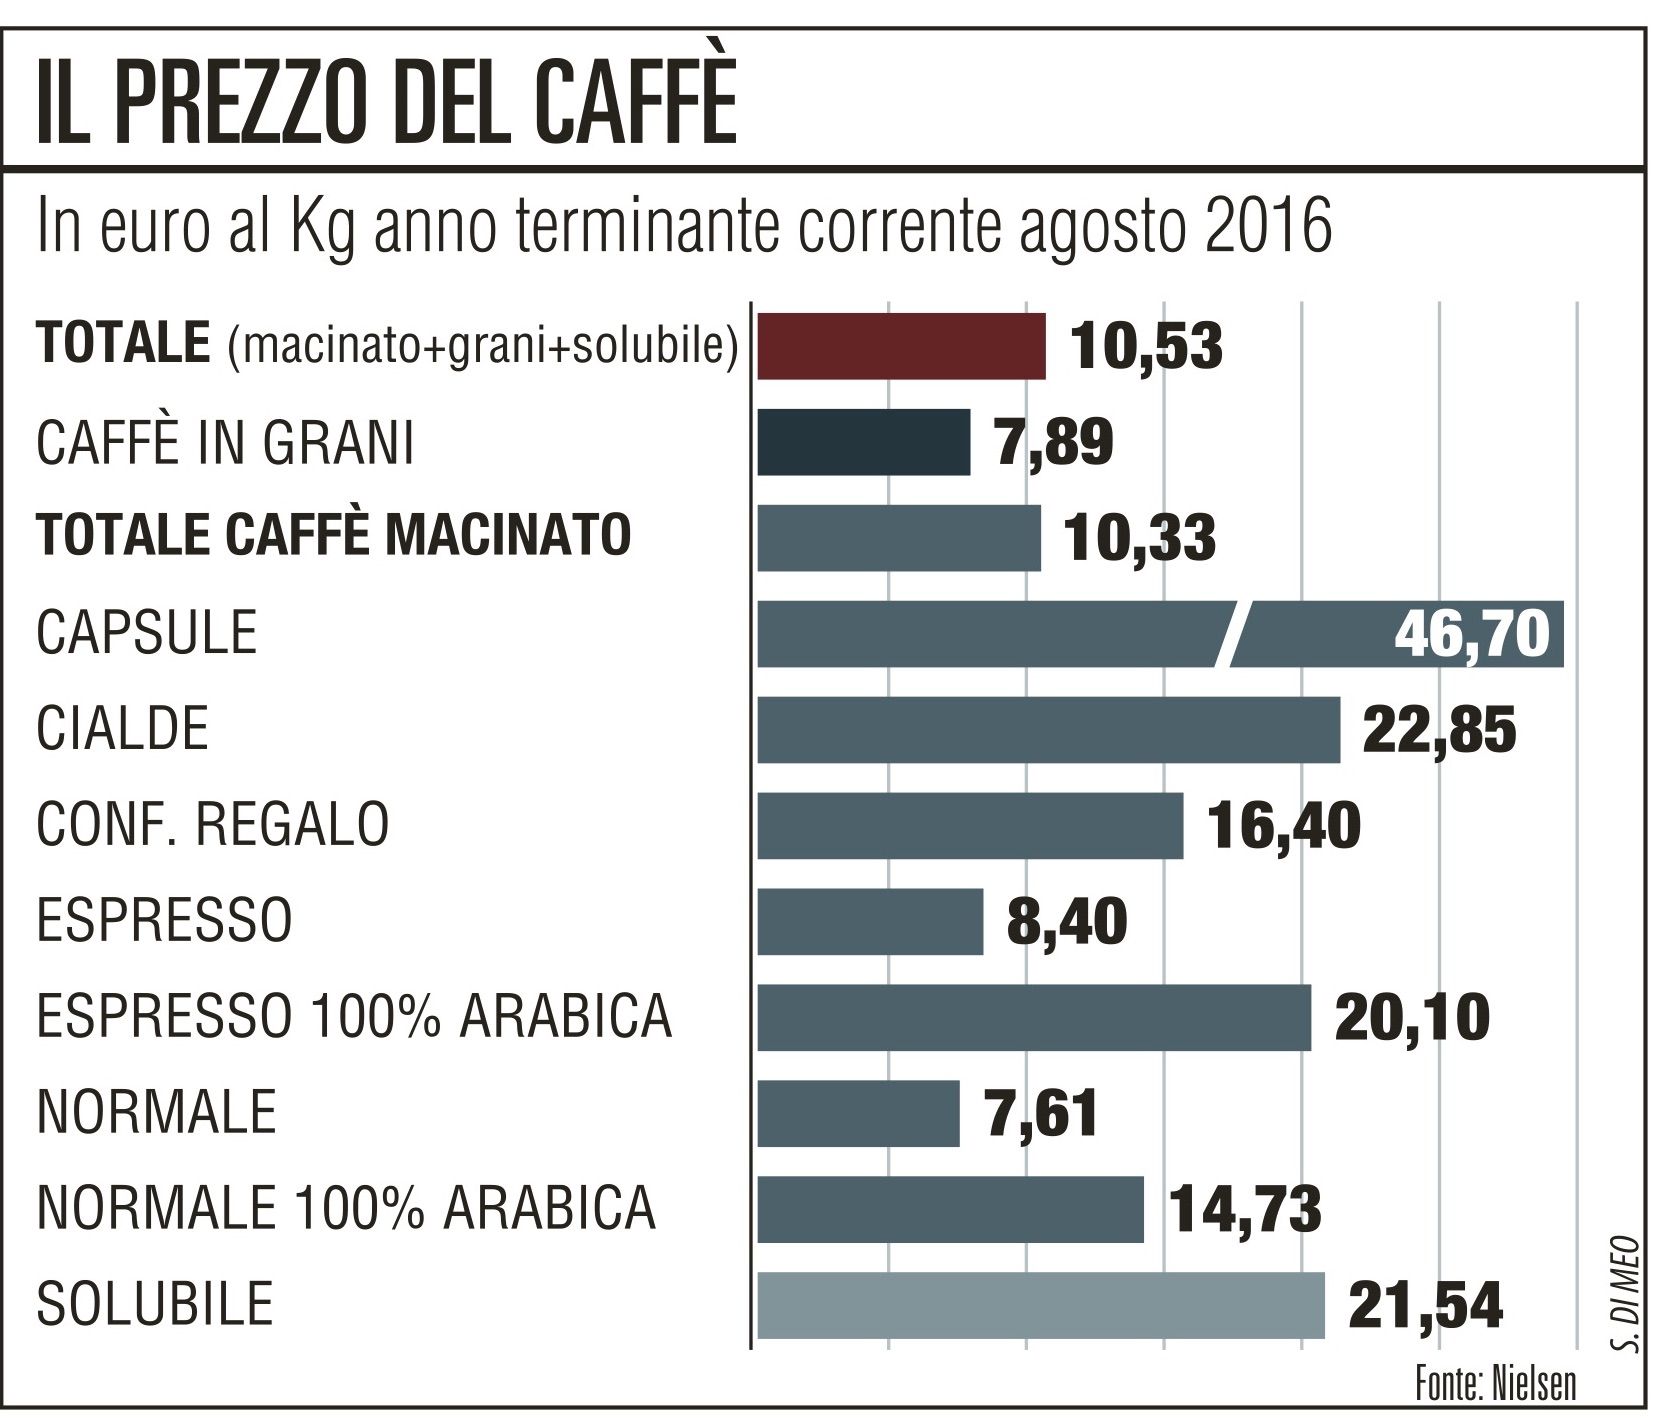 il prezzo del caffè infografica